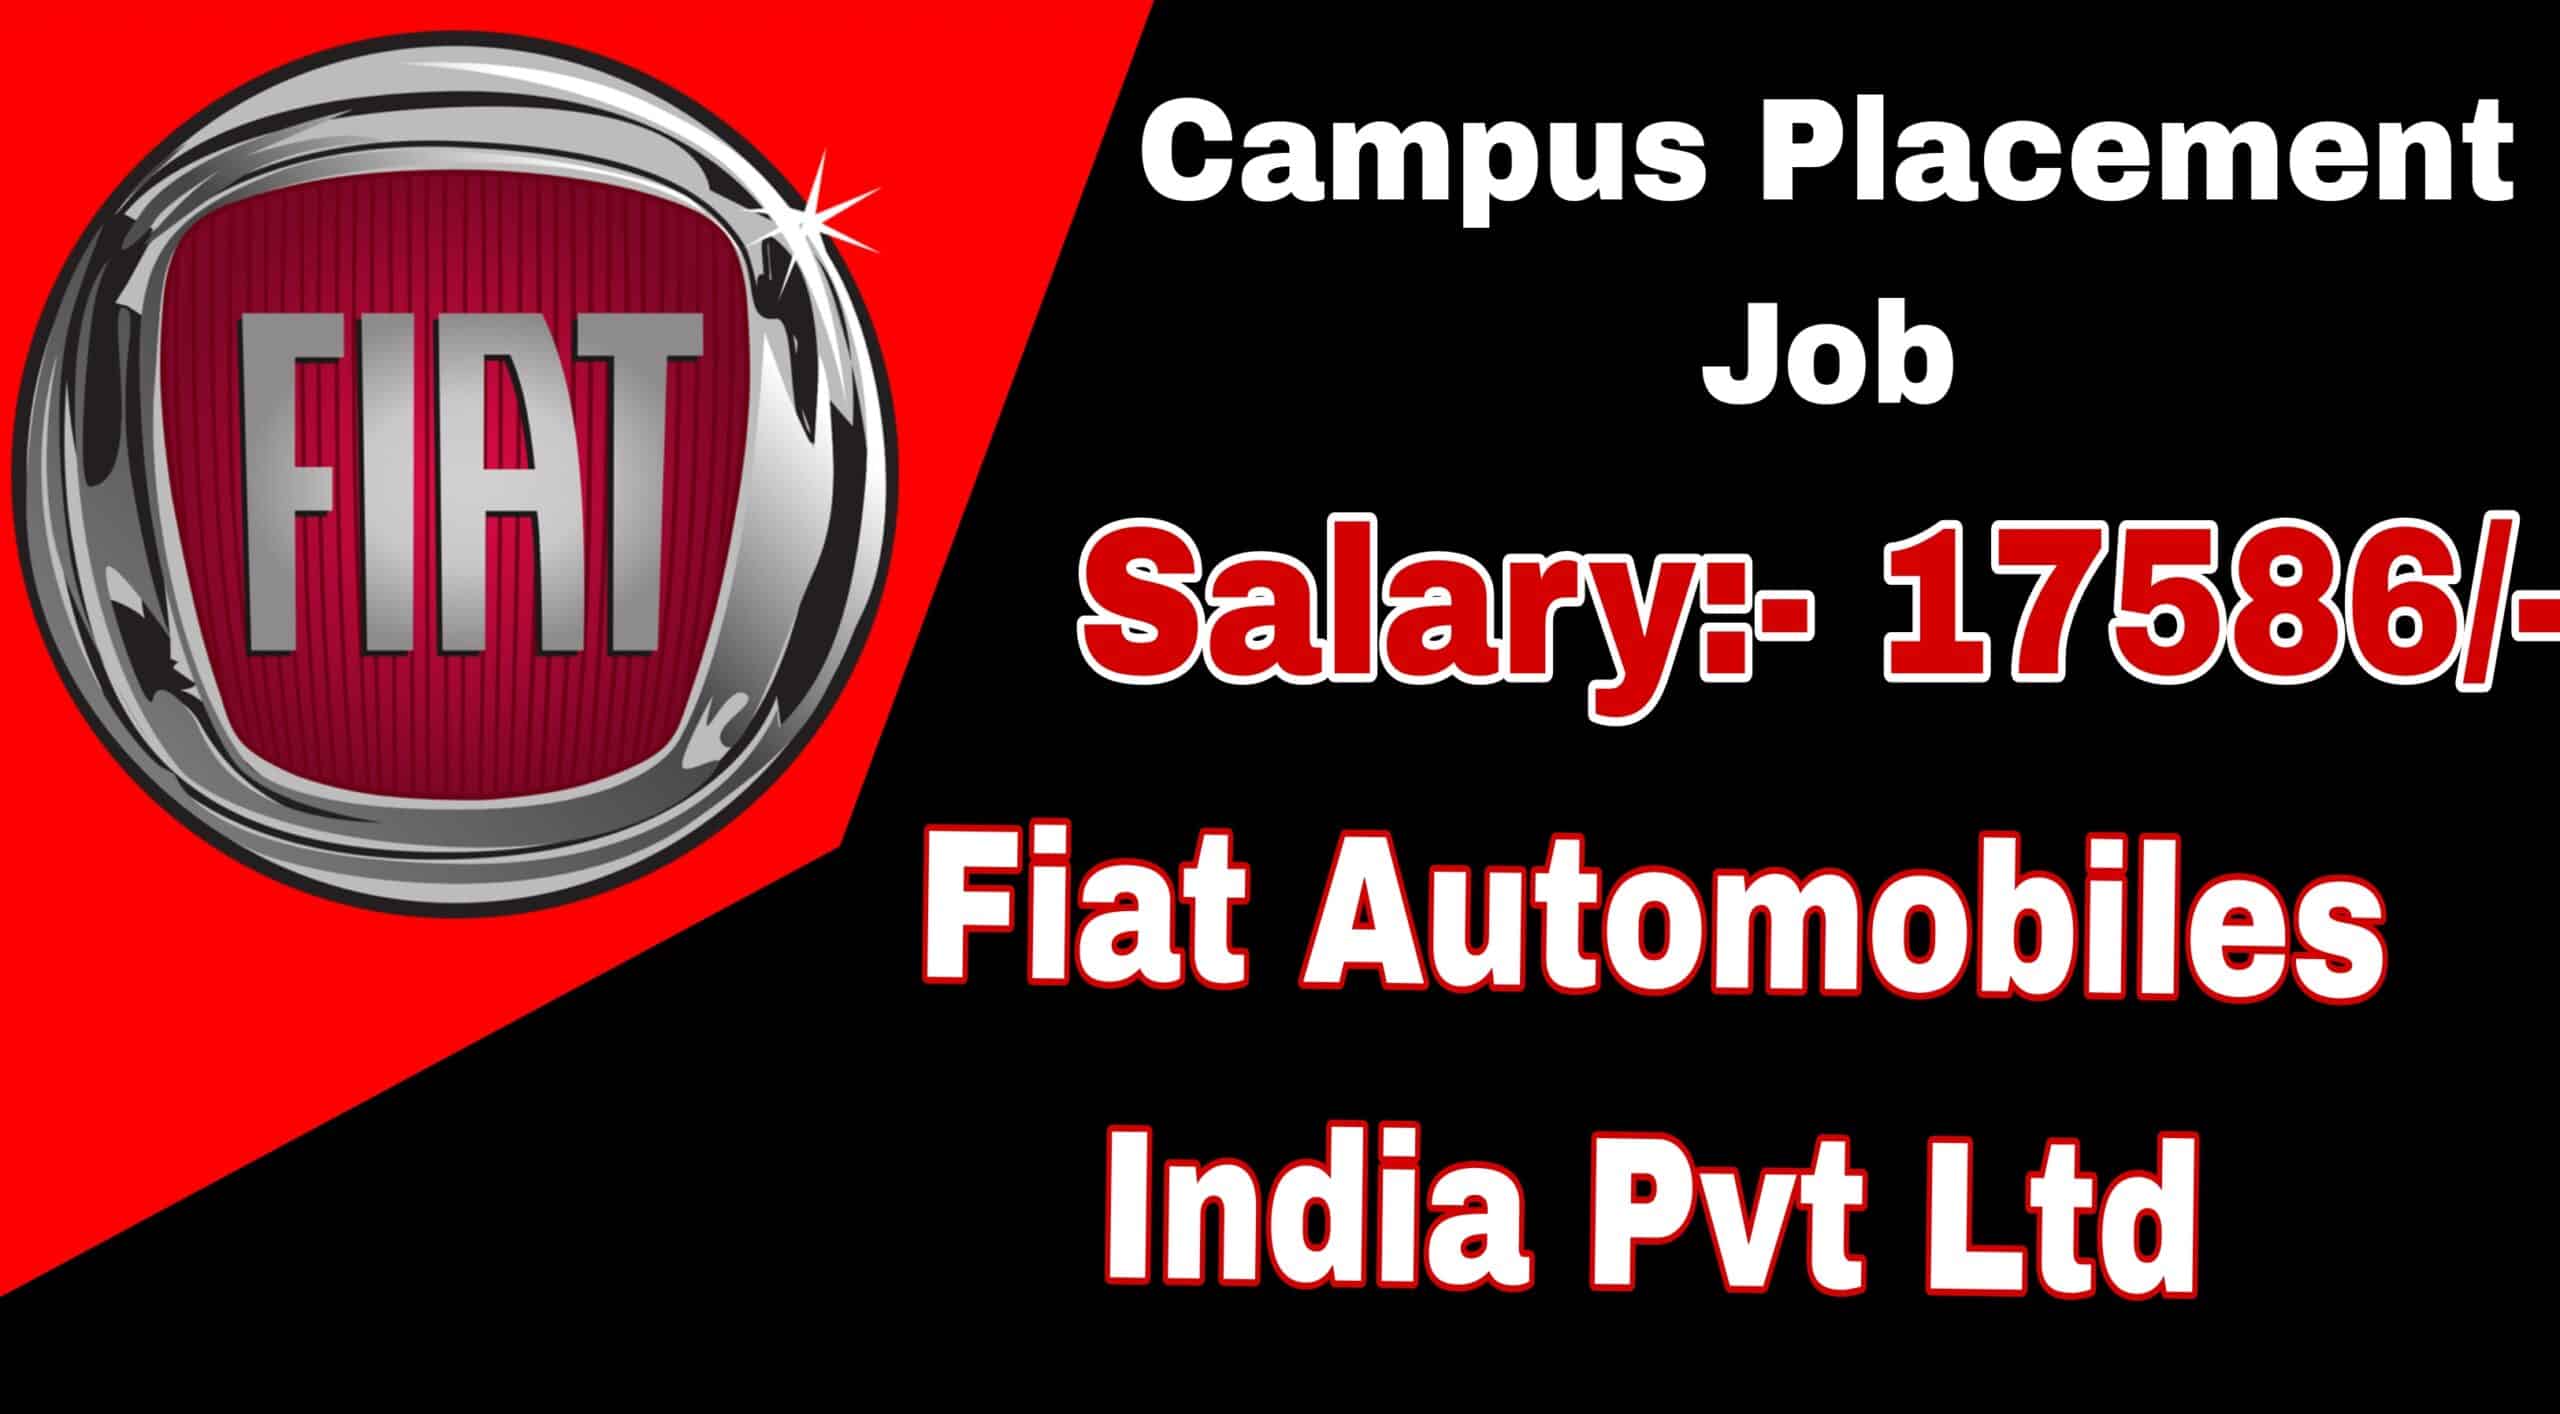 Fiat Automobiles India Ltd Job | Campus Placement